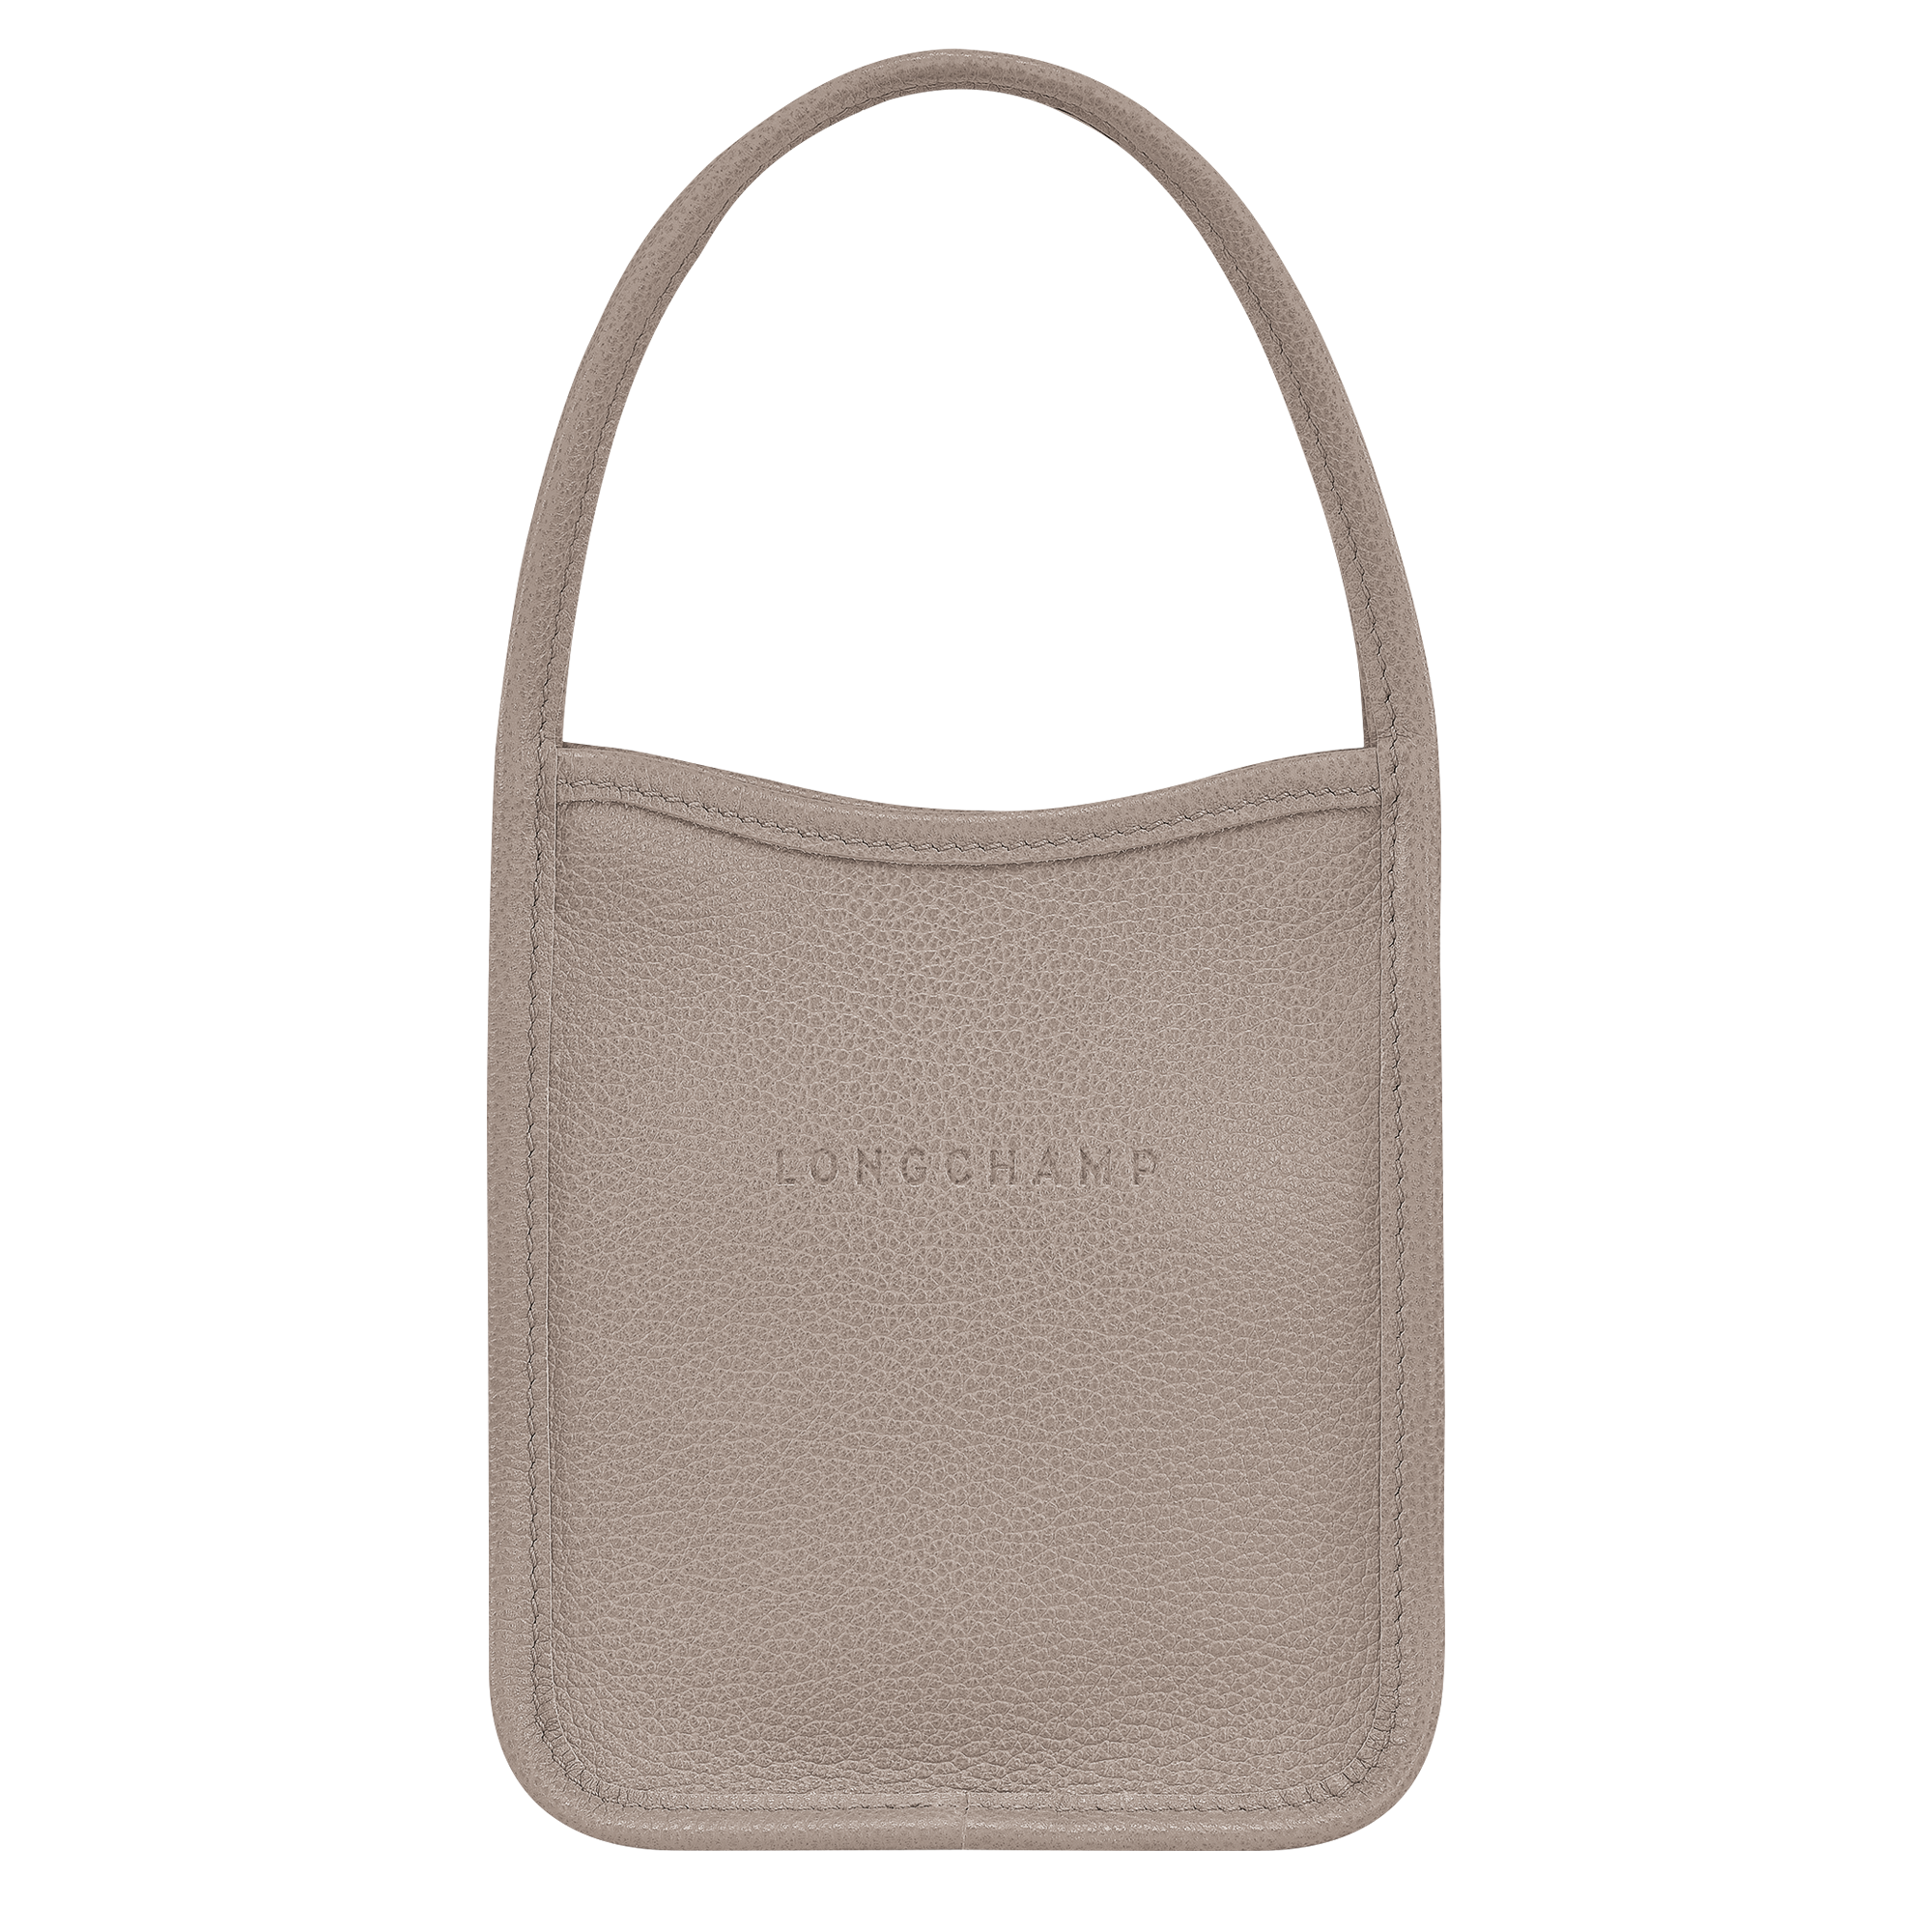 Le Foulonné S Briefcase Black - Leather (L2122021047)